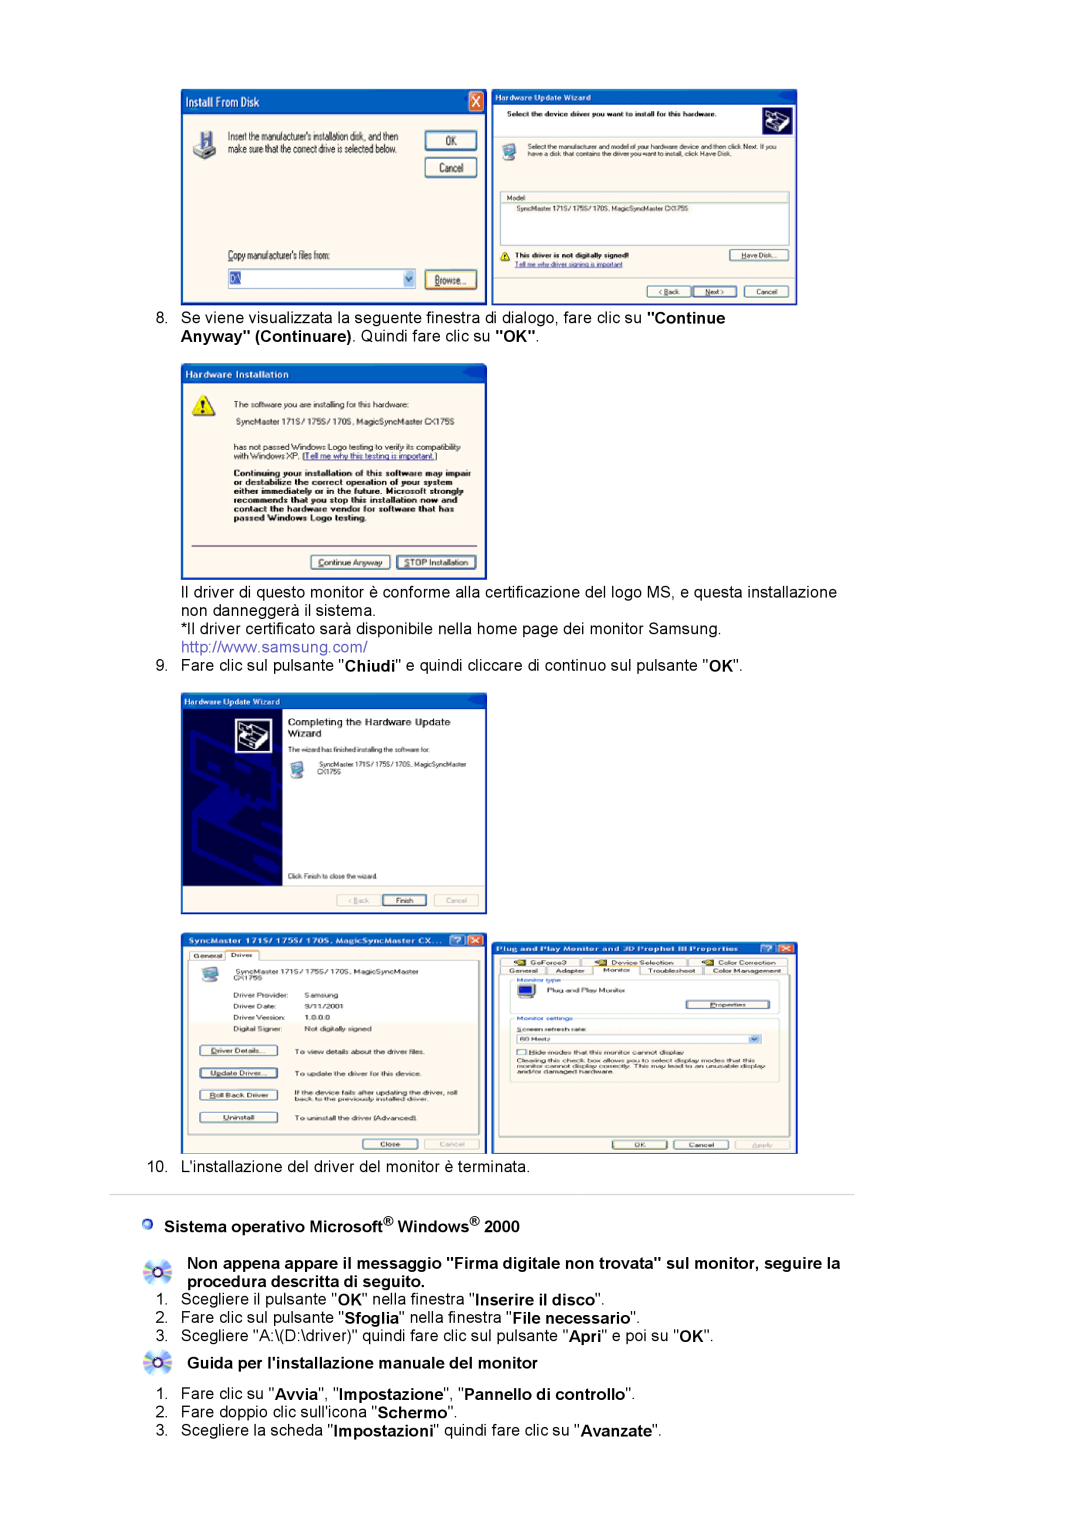 Samsung LS17MJVKS/EDC Sistema operativo Microsoft Windows, Guida per linstallazione manuale del monitor 